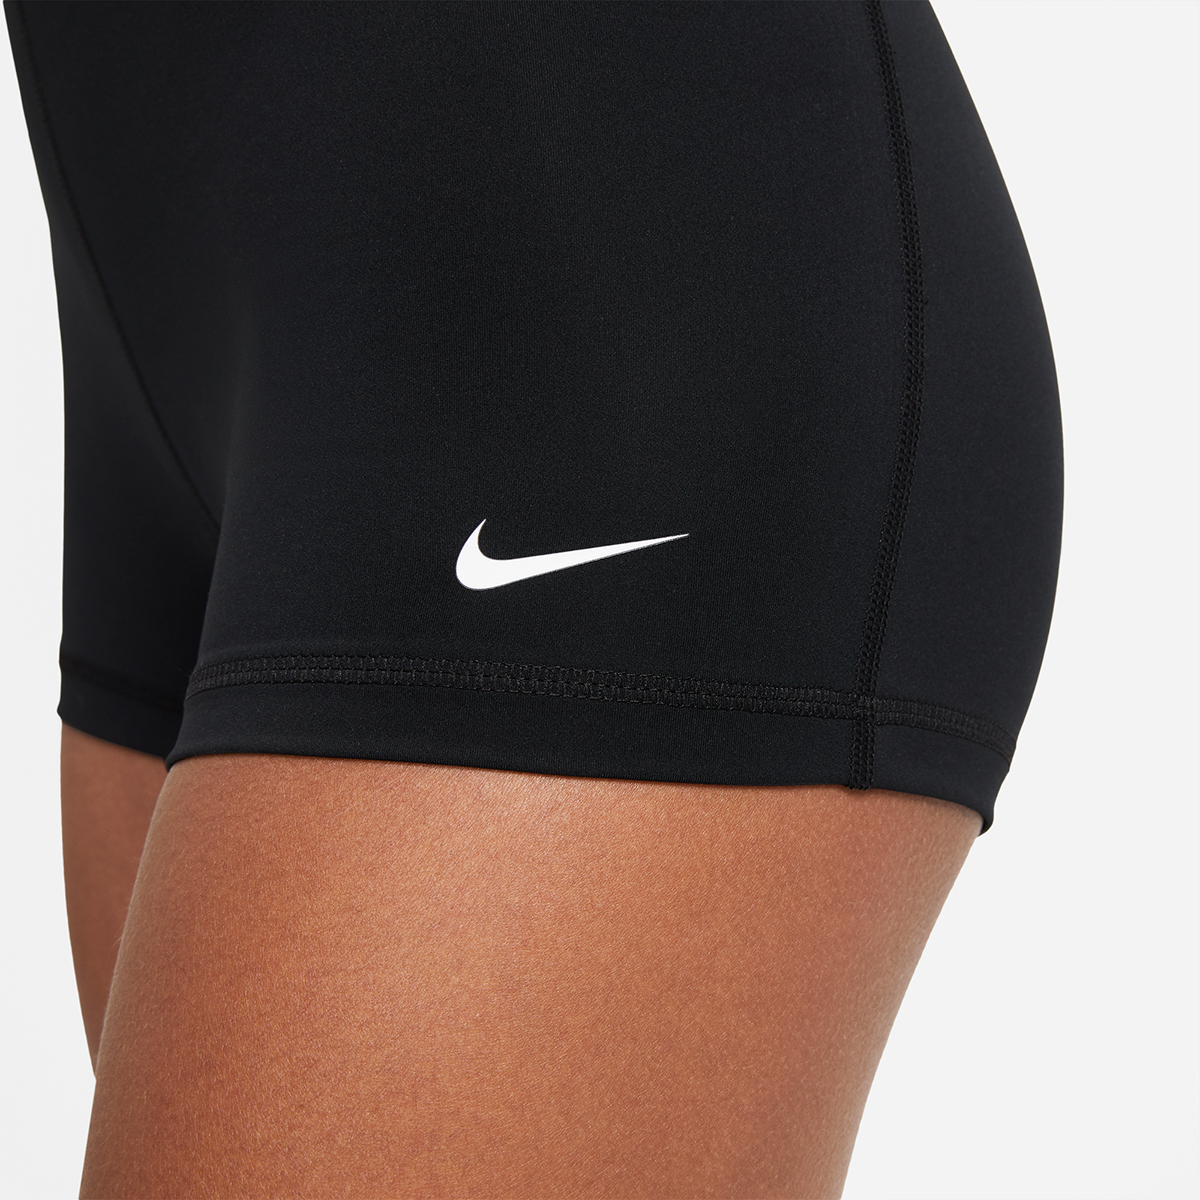 Nike Pro 3" Short, , large image number null